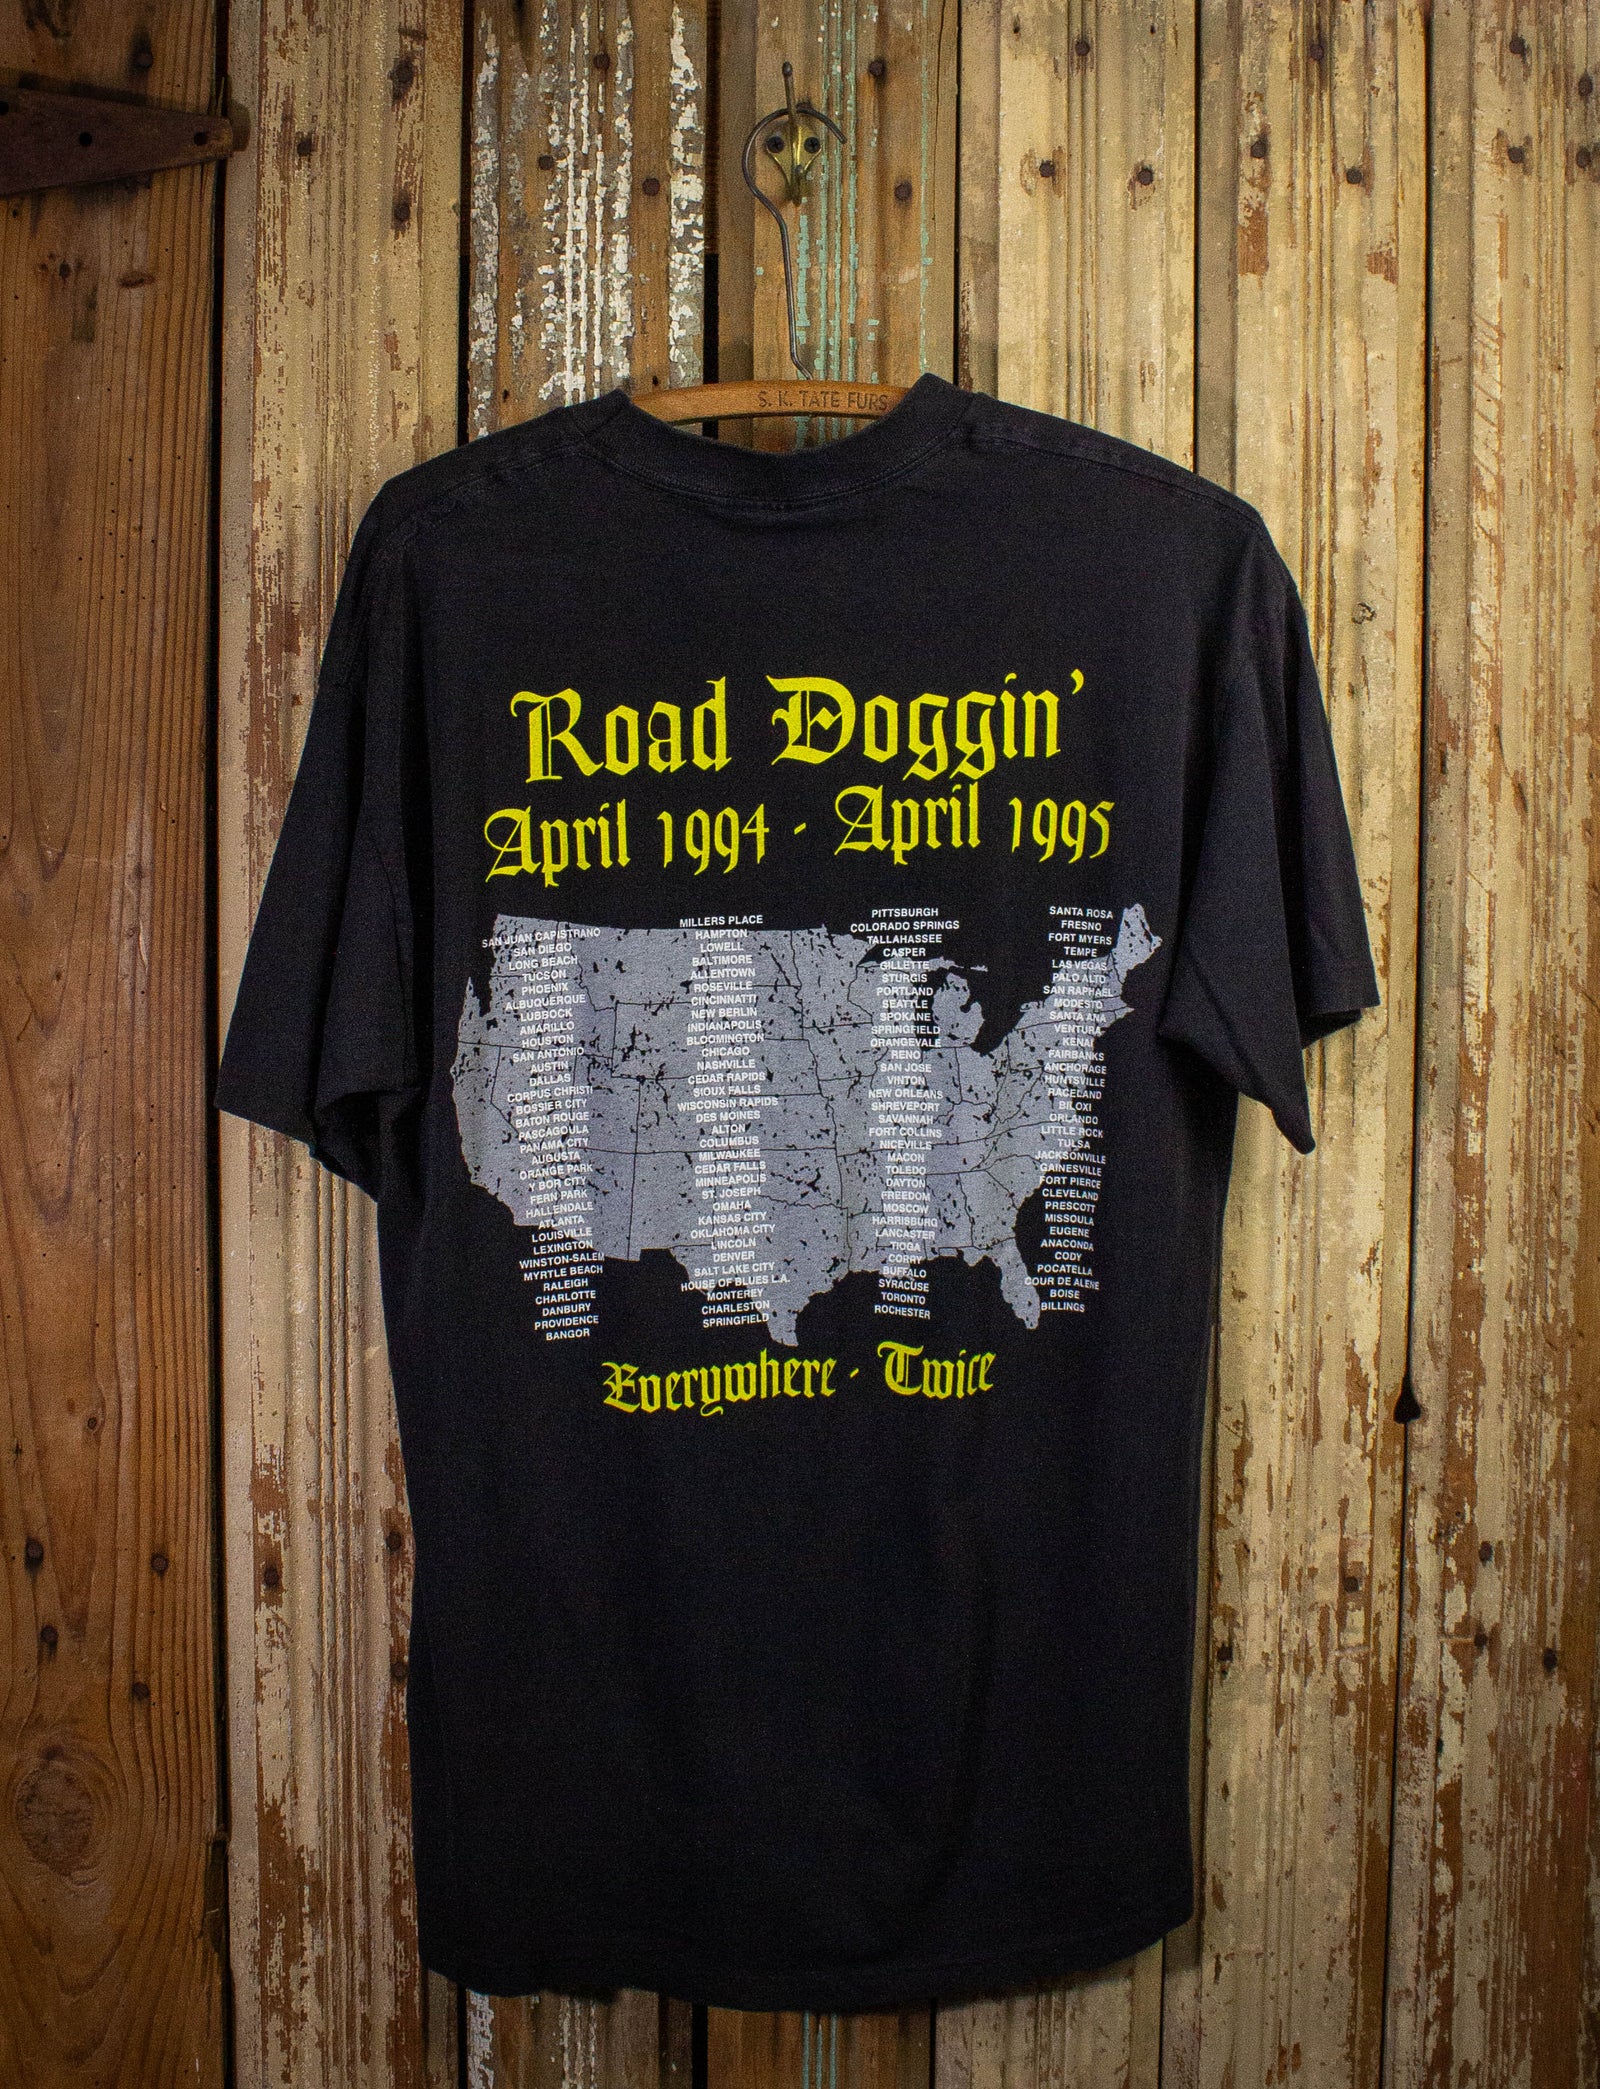 Vintage Great White Road Doggin' Concert T Shirt 1994-1995 Black Large